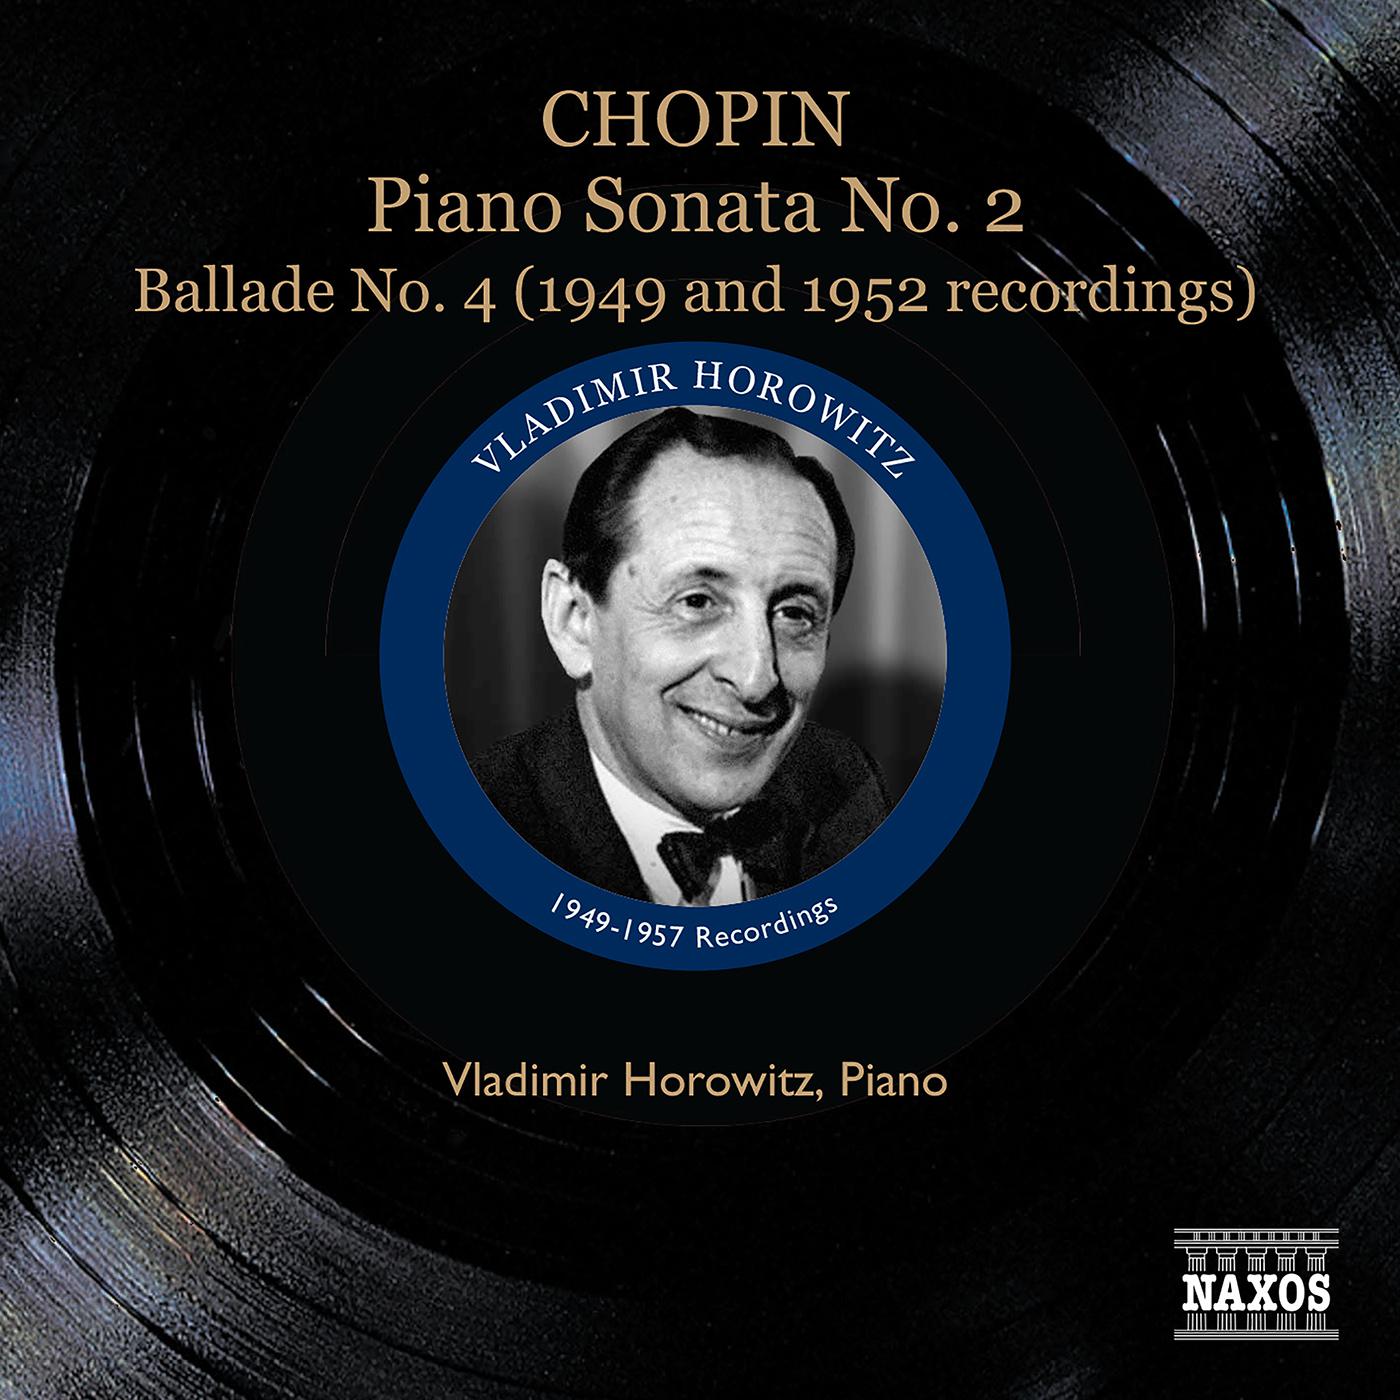 CHOPIN: Piano Sonata No. 2 / Ballade No. 4 / Polonaise-fantaisie (Horowitz) (1947-1957)